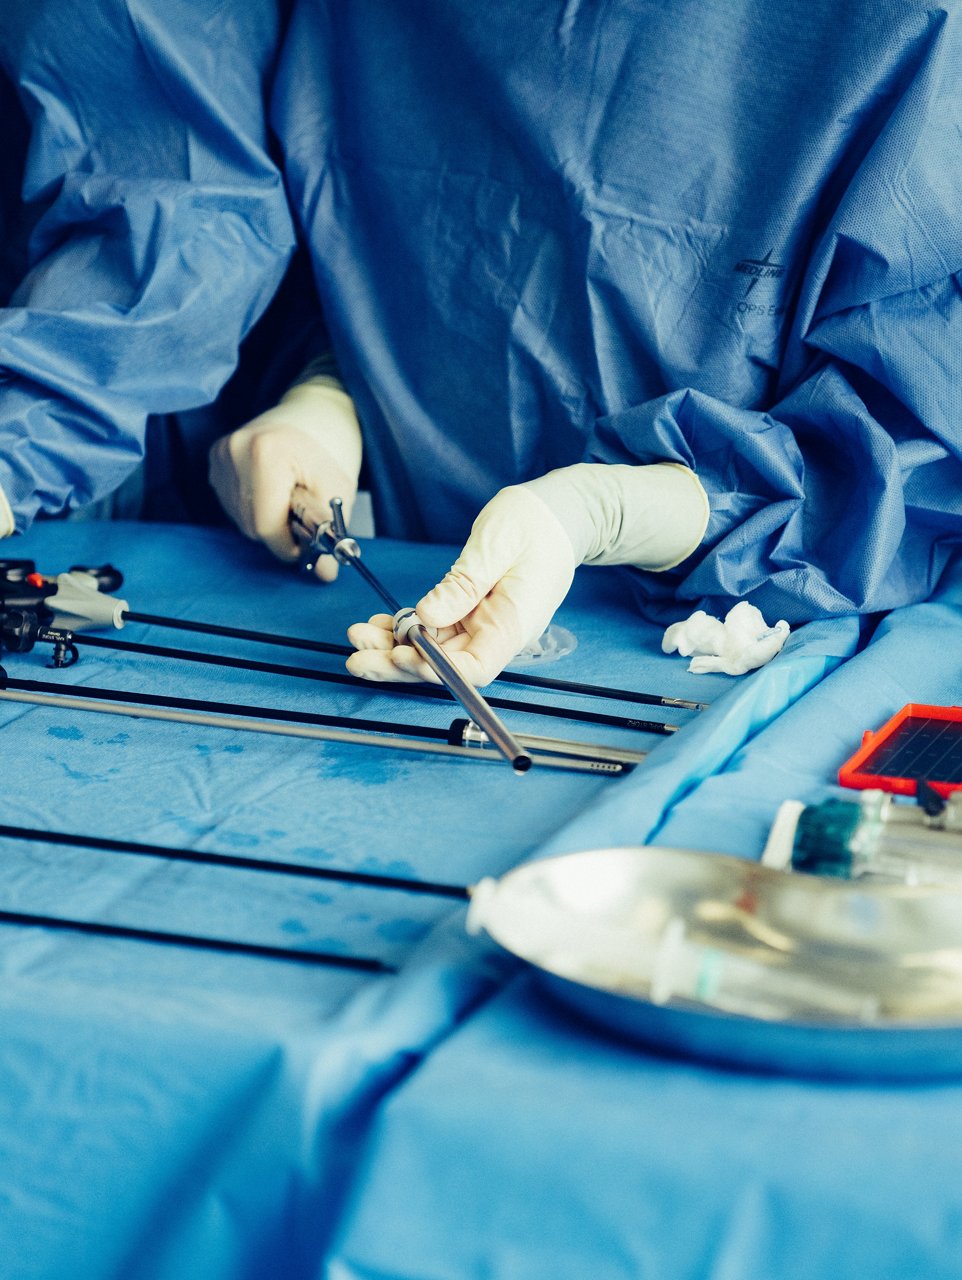 Chirurgische Instrumente auf dem OP-Beistelltisch